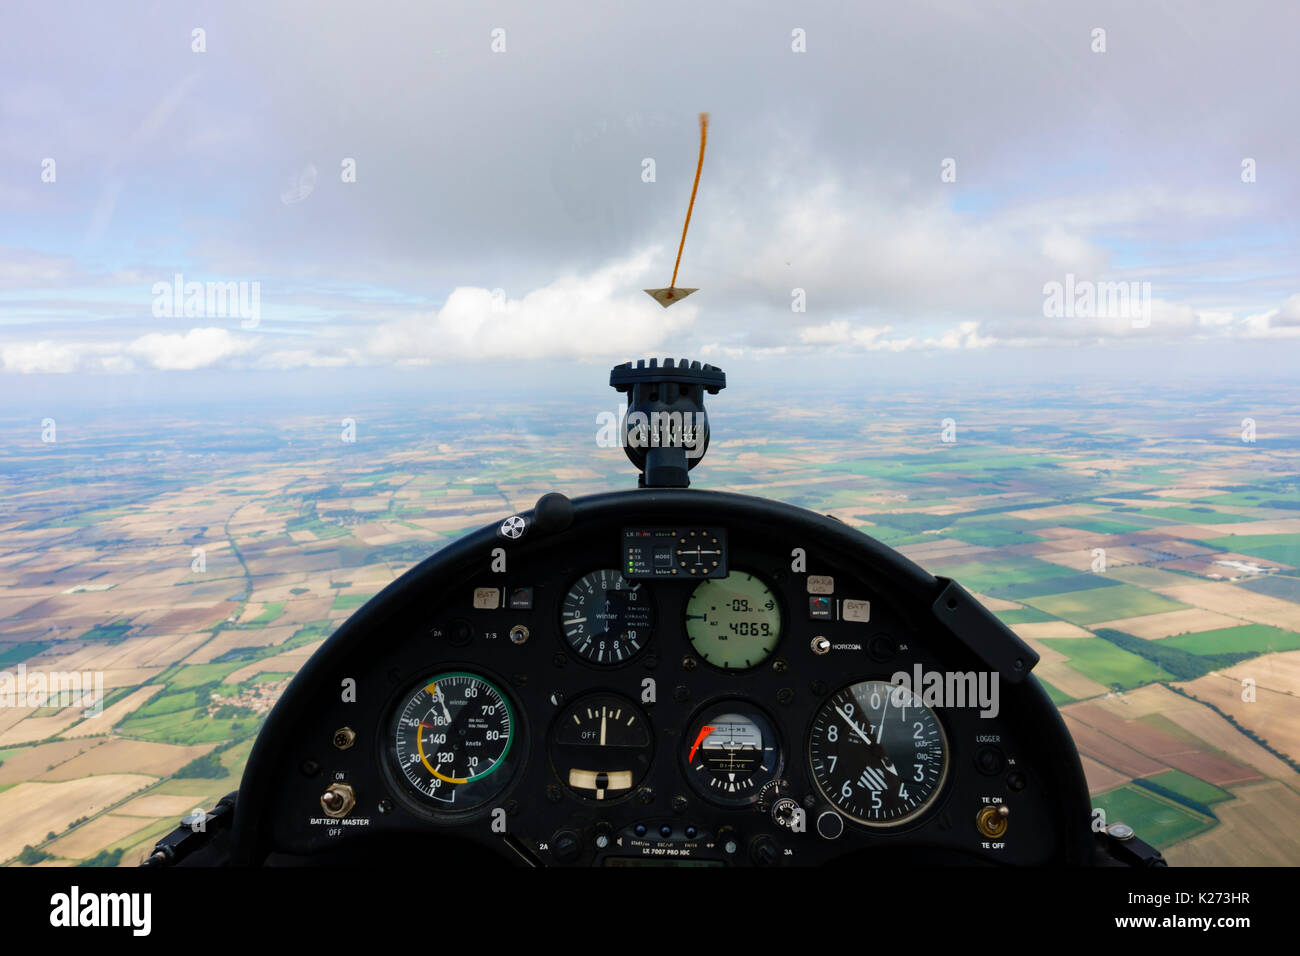 Vista aerea del cockpit dei piloti di un deltaplano Rolladen-Schneider LS8 - 18 che mostra il quadro strumenti Foto Stock